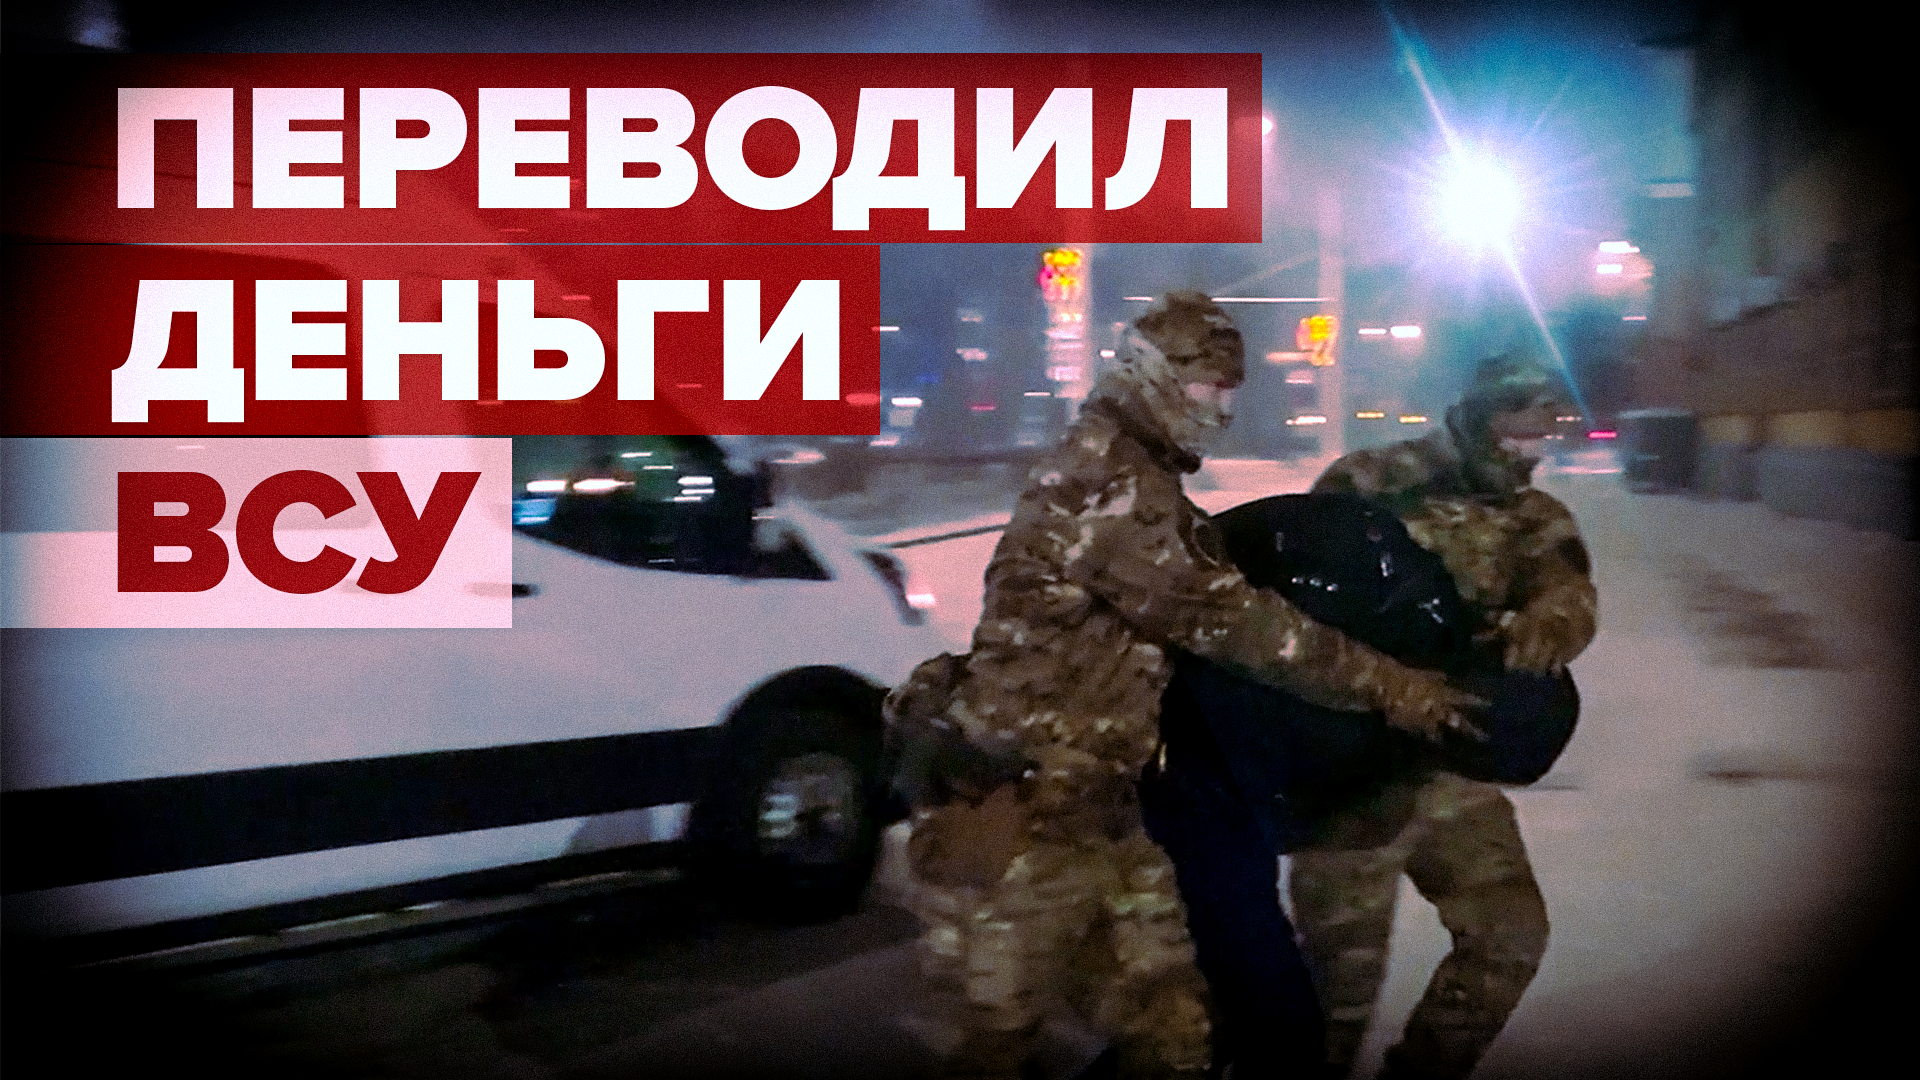 ФСБ задержала жителя Новокузнецка за госизмену — видео